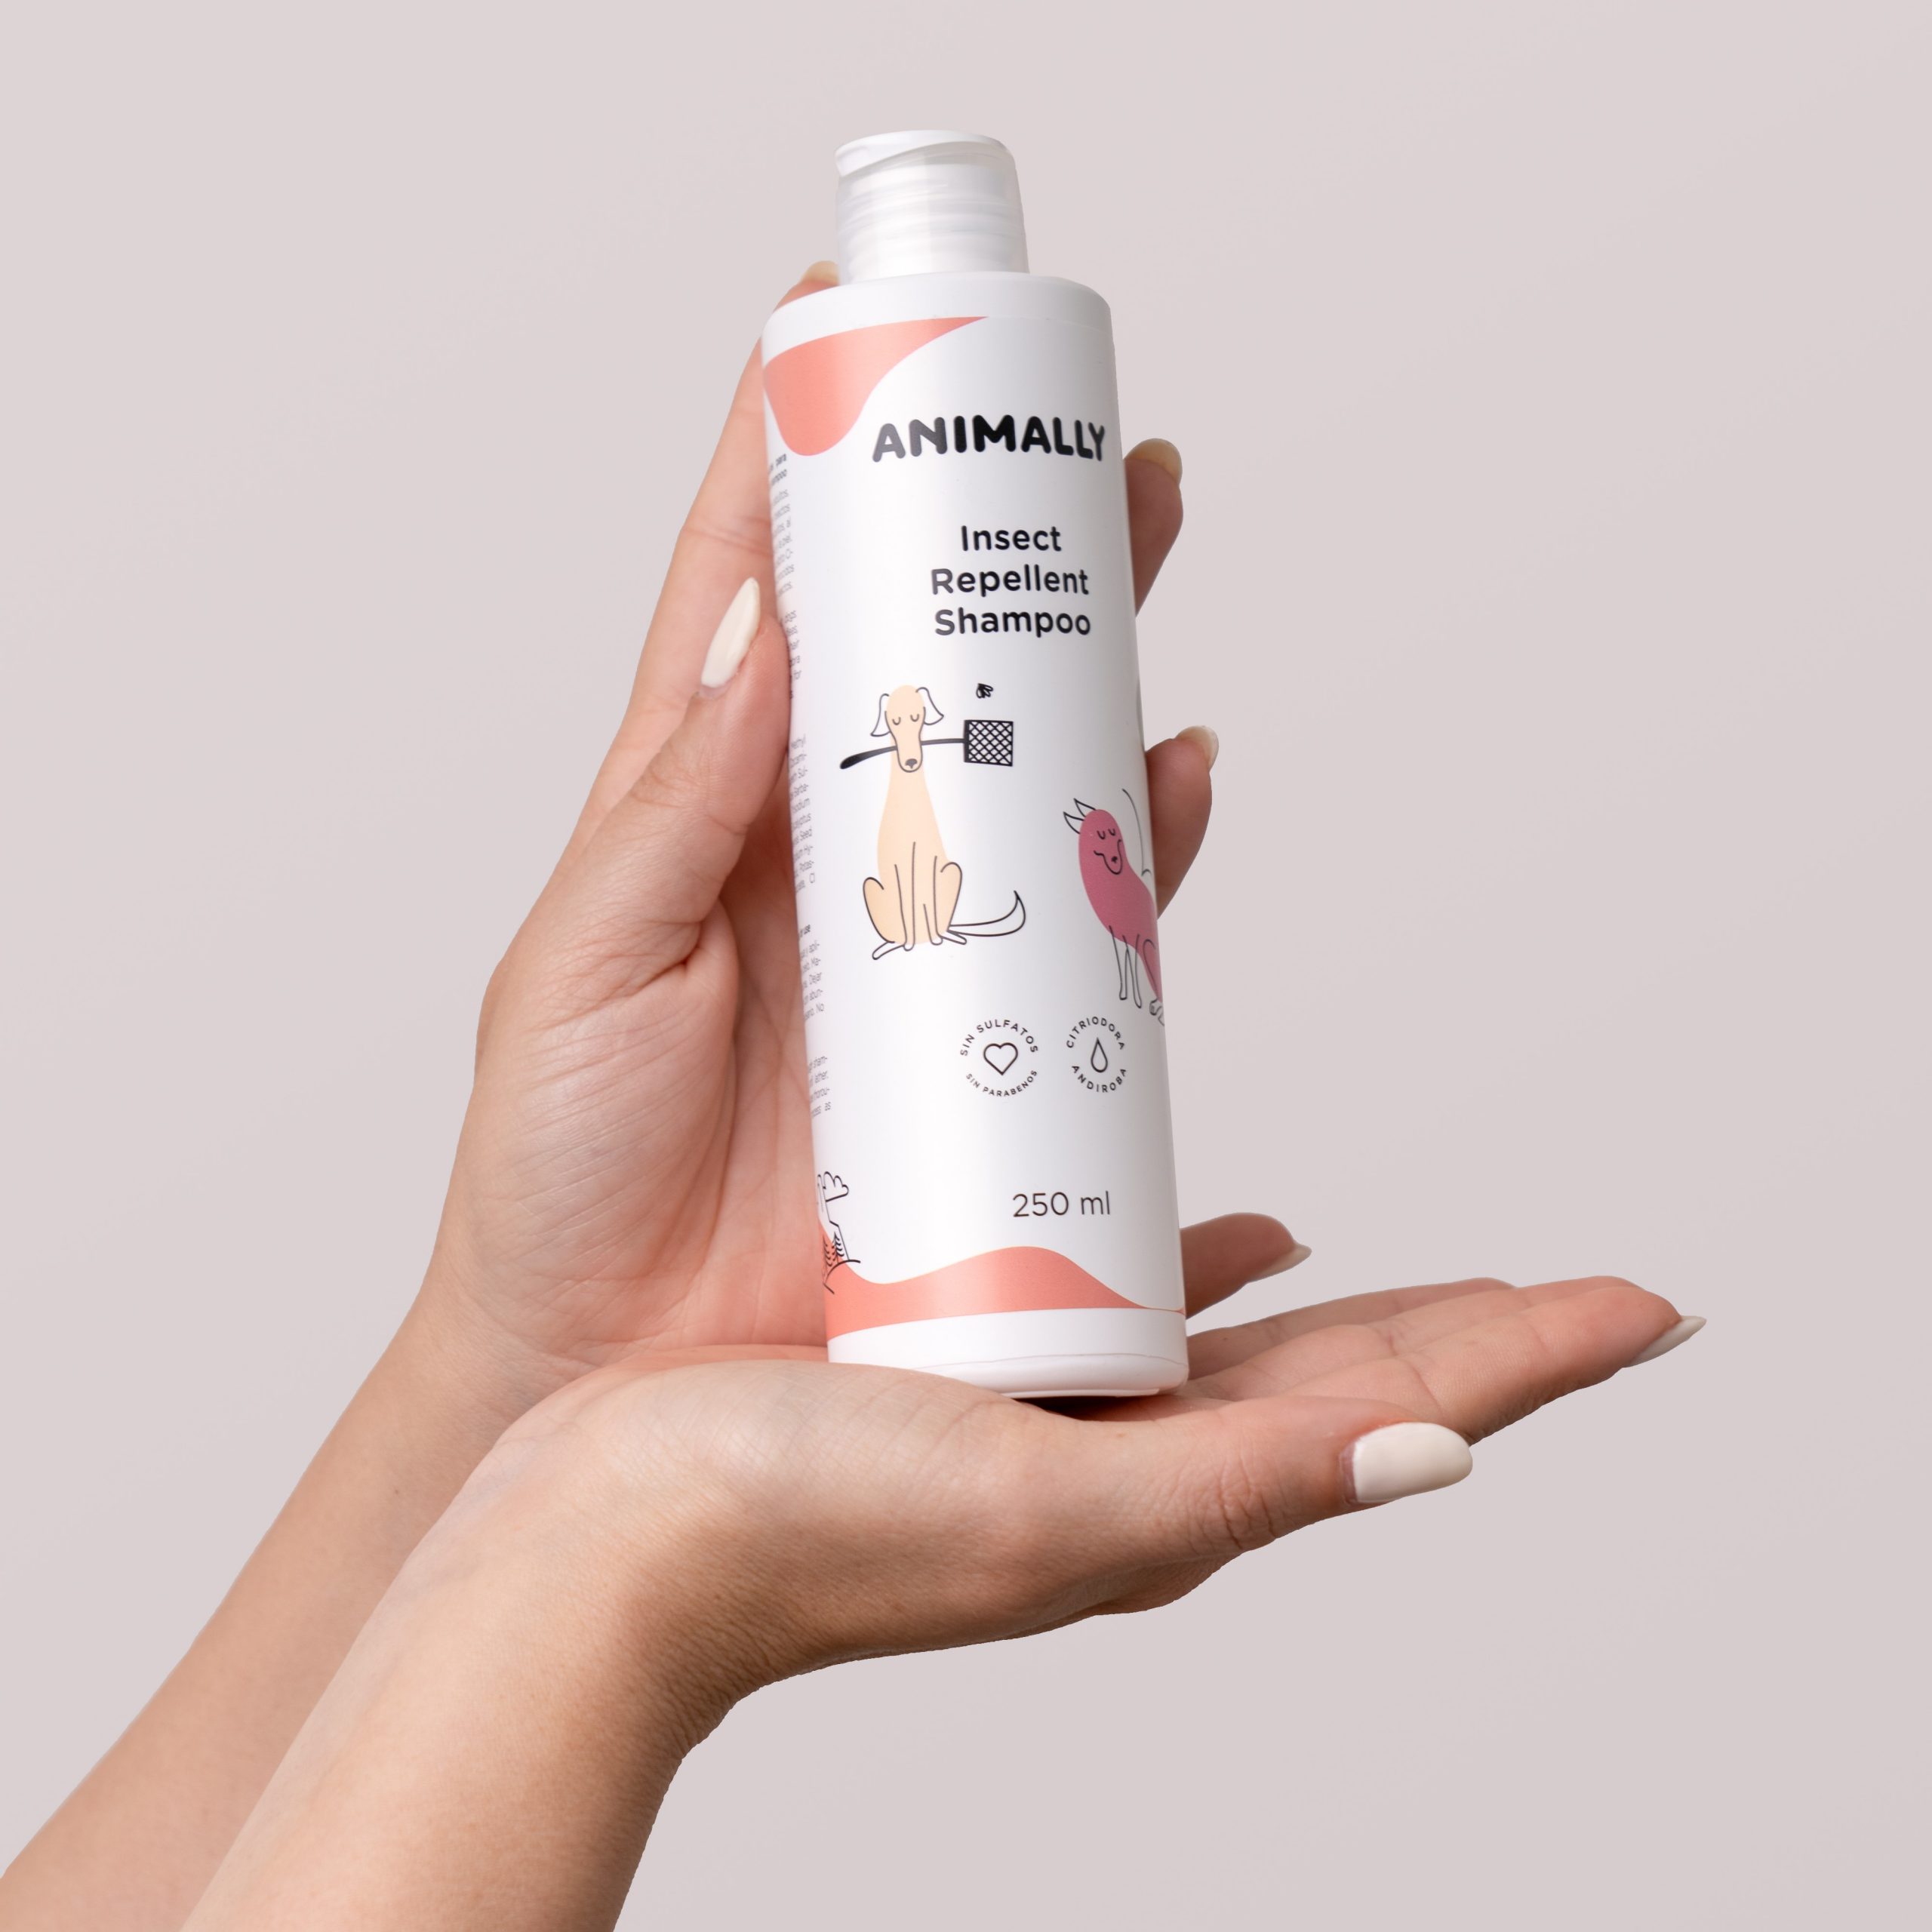 Animally Biologische Dieren shampoo tegen insecten - vlooien - katten en honden 250ml